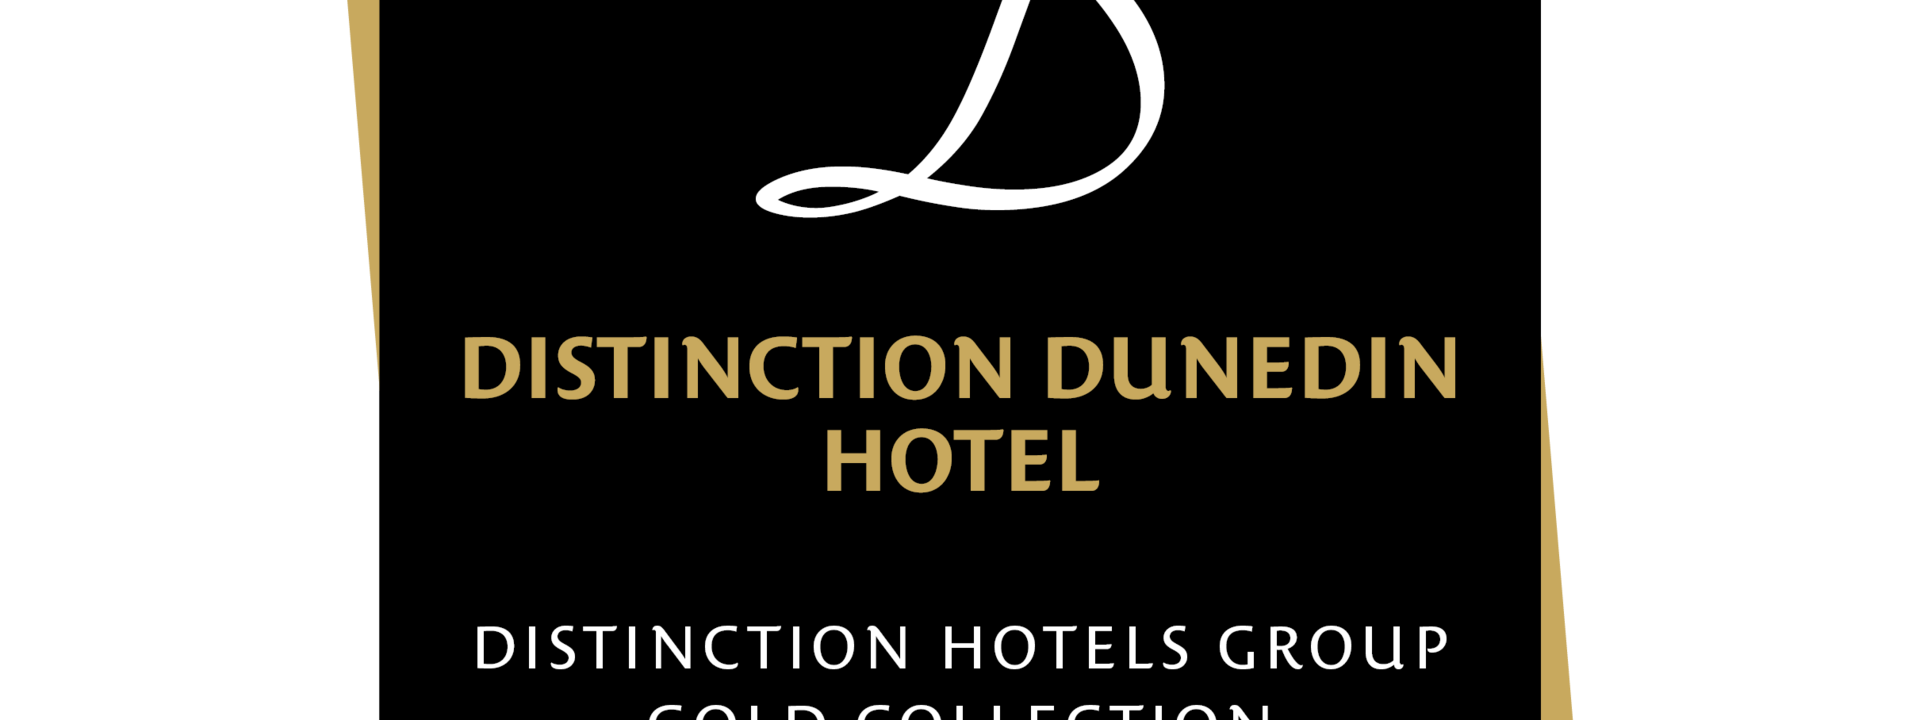 Distinction Dunedin Hotel logo4 PNG.png